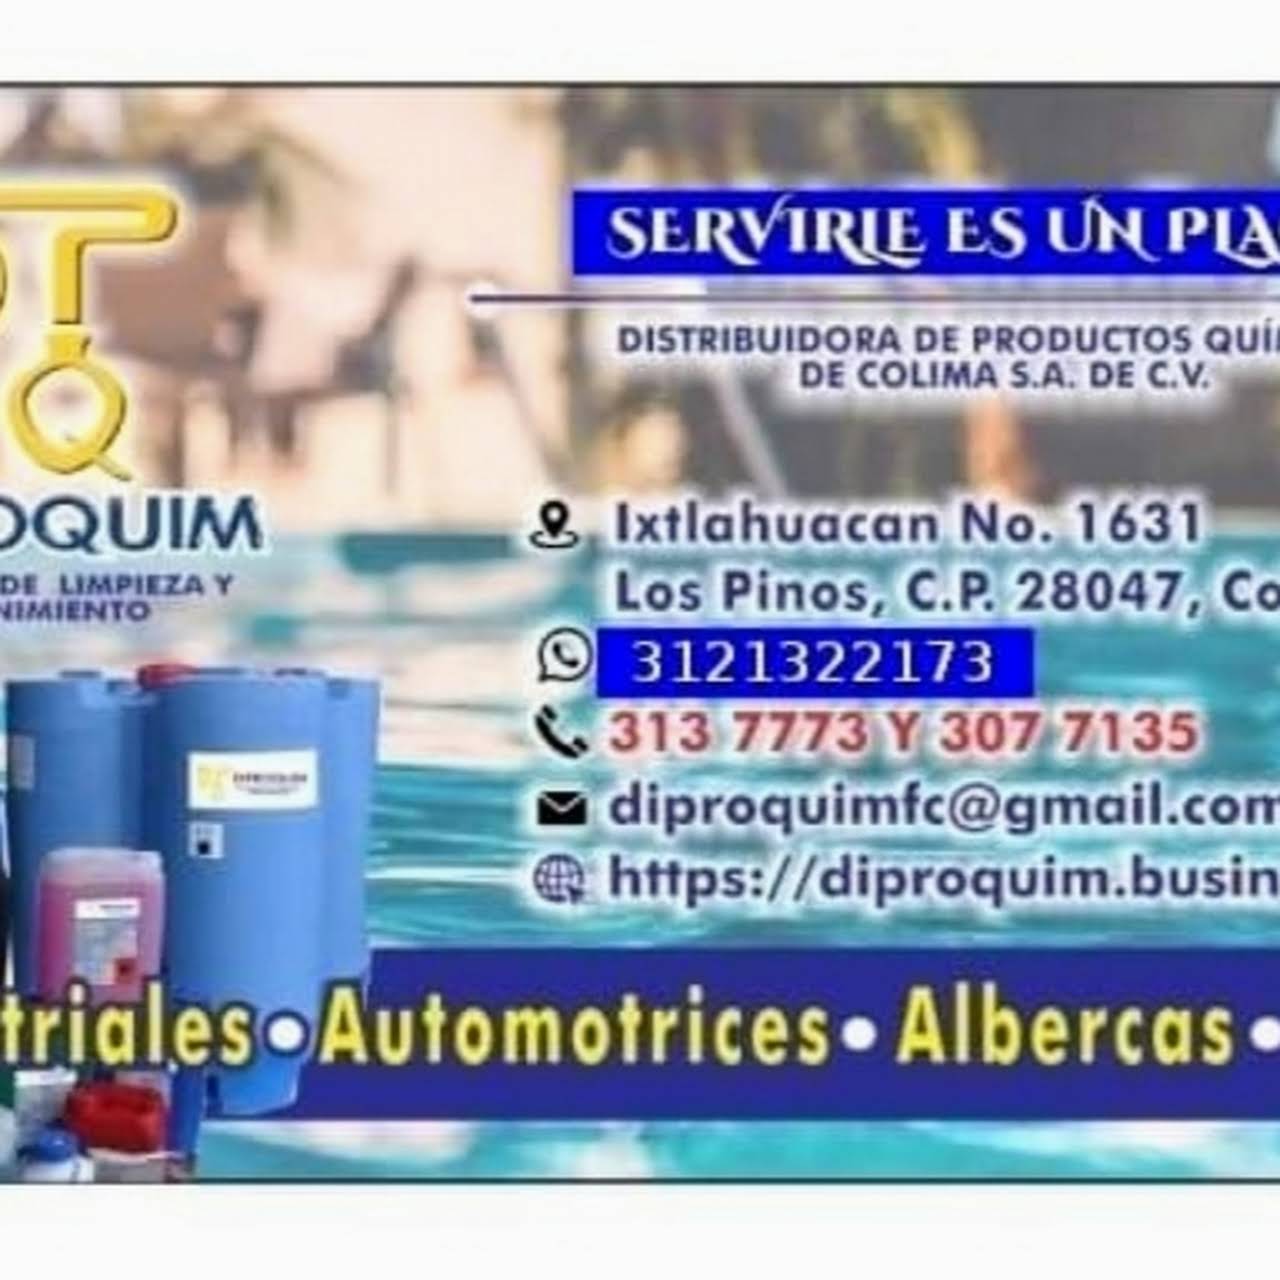 DIPROQUIM Distribuidora de Productos Químicos de Colima, . de . -  Proveedor de equipos y productos para albercas y de limpieza en general.